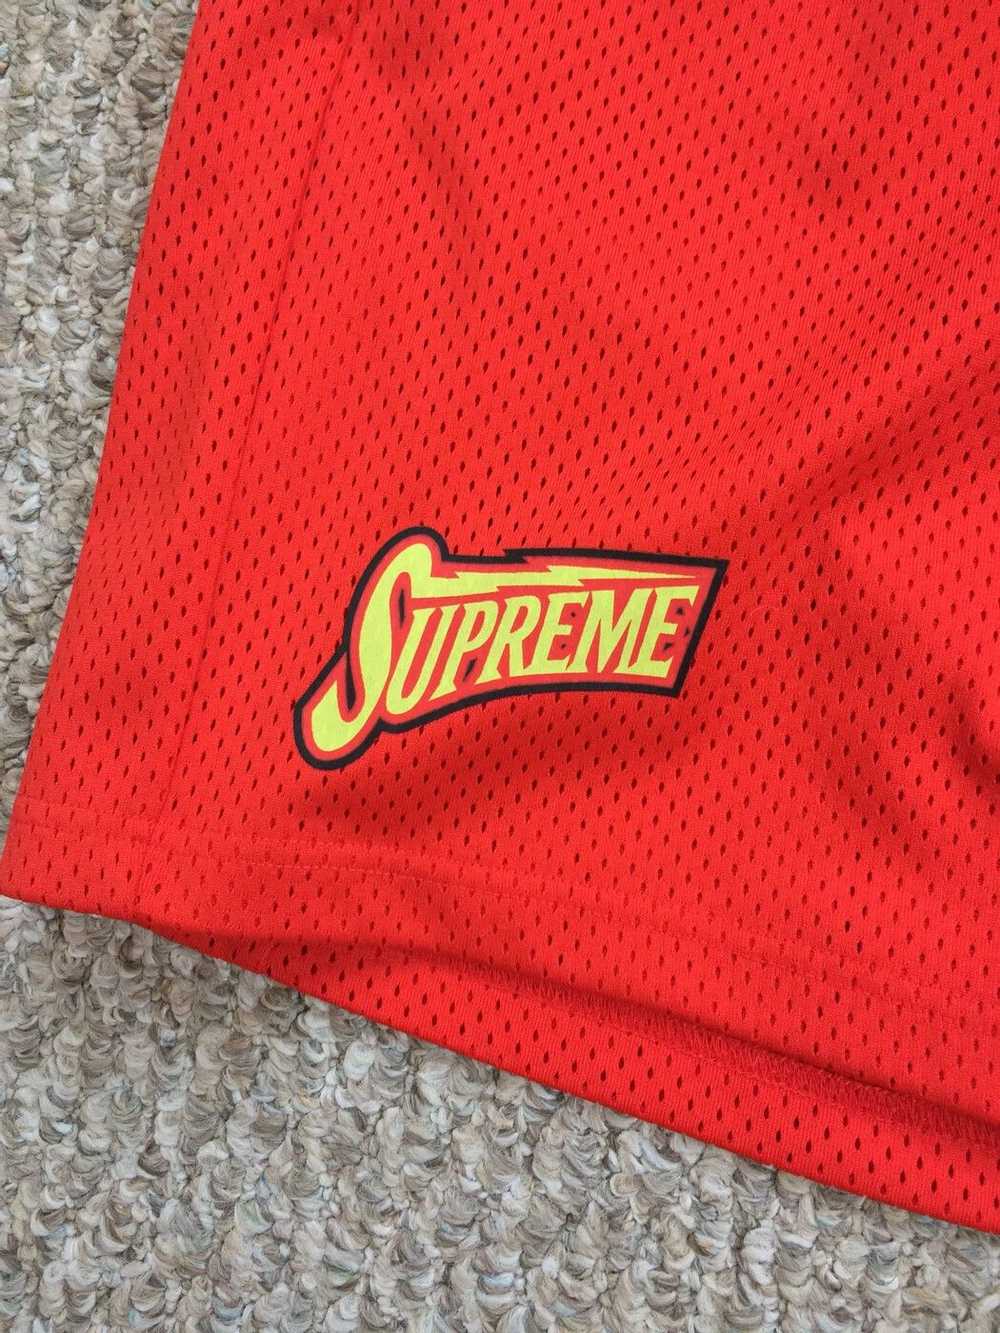 Supreme S/S 2018 Supreme Bolt Shorts - image 5